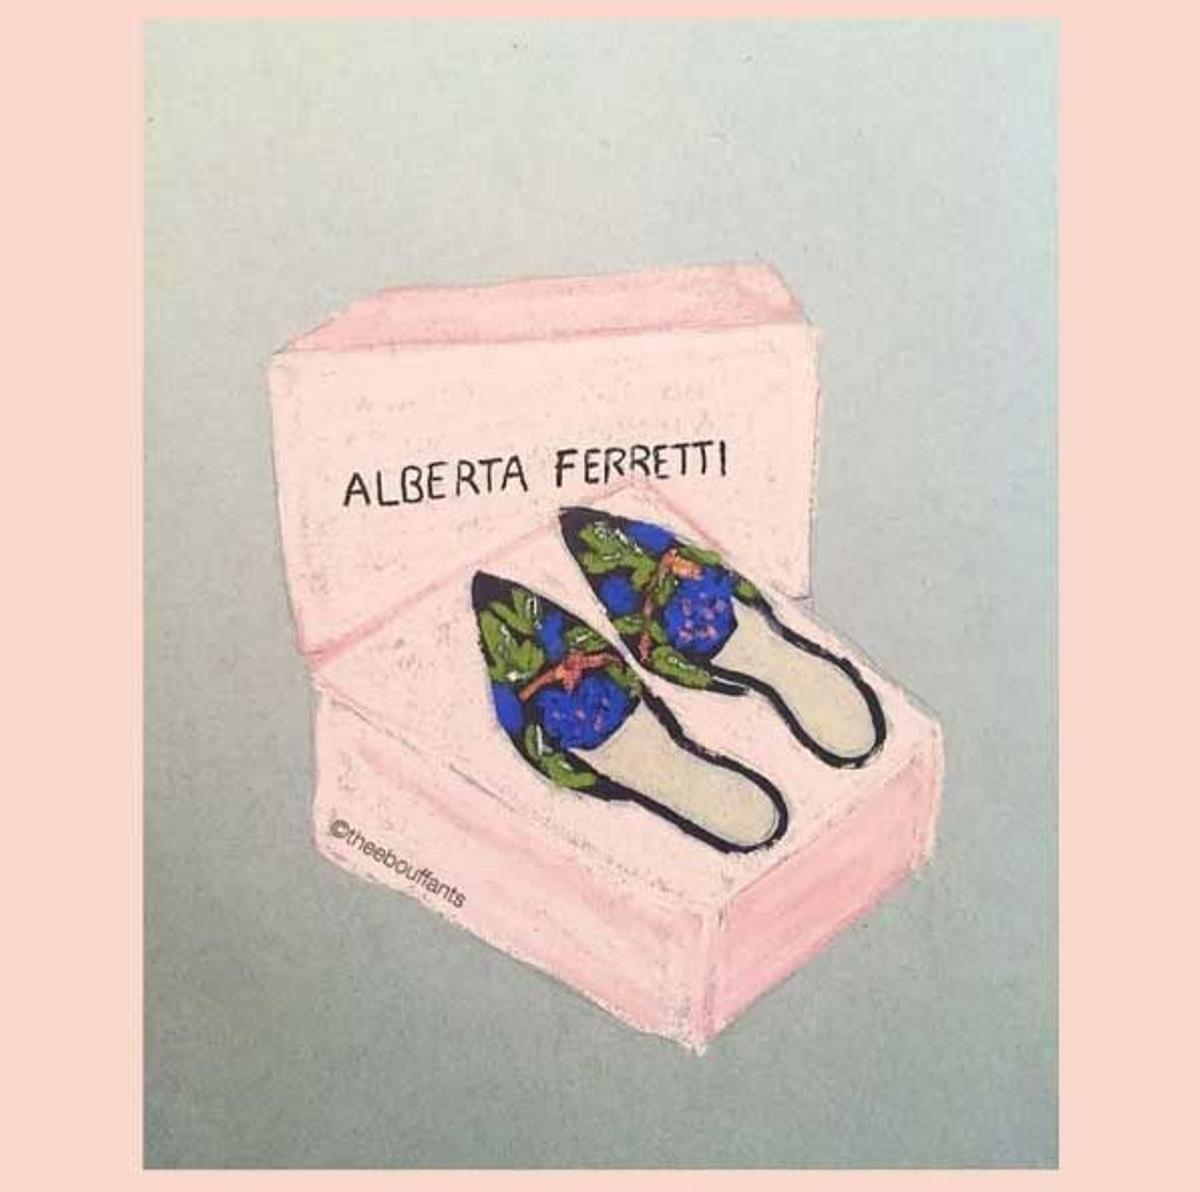 We love #MiaMules de Alberta Ferretti